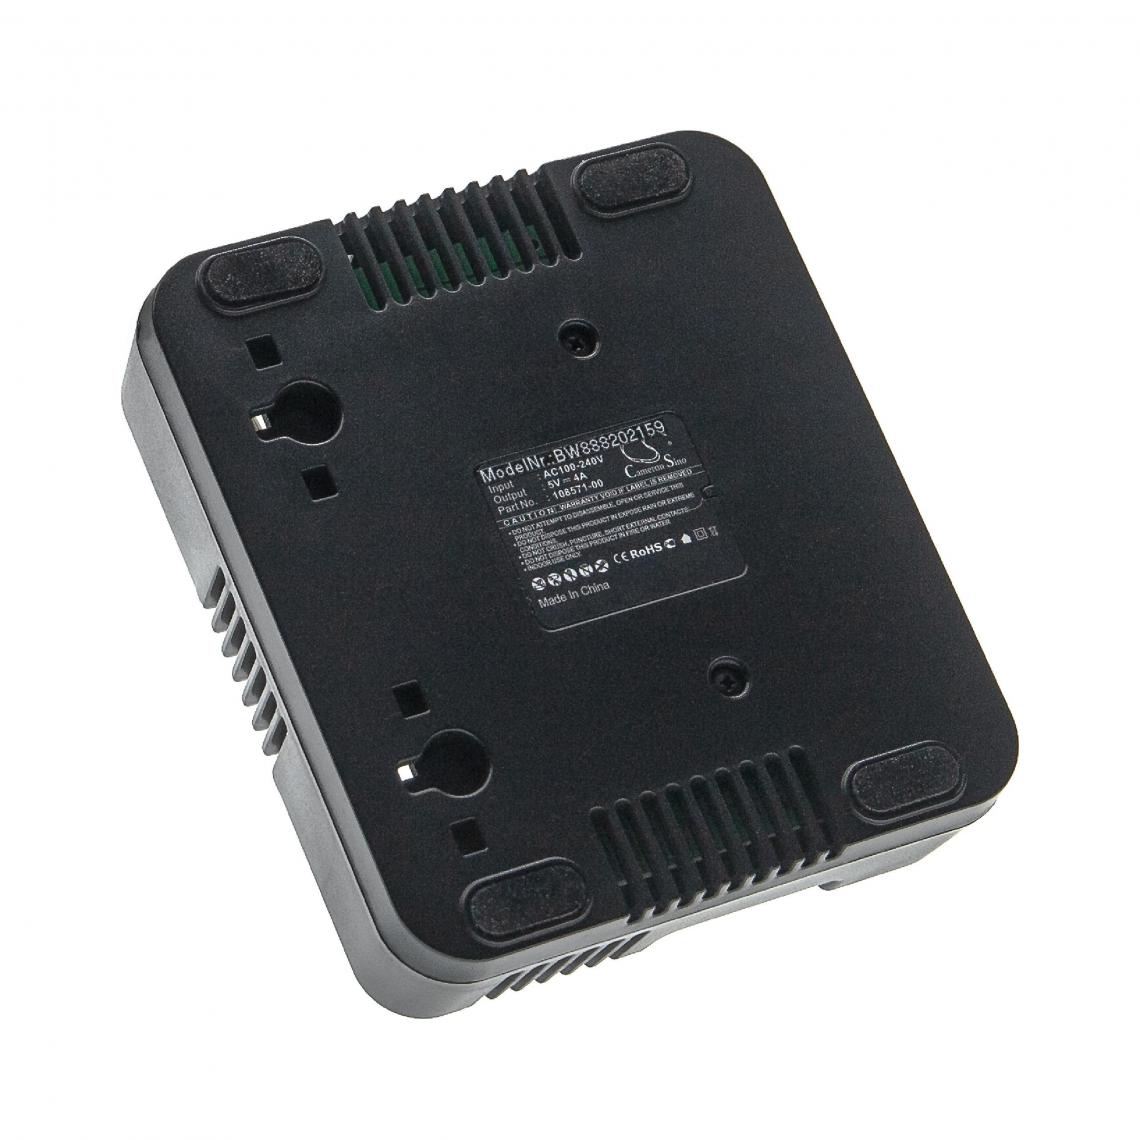 Vhbw - vhbw Chargeur compatible Trimble Nomad 800XC, 800XC Numeric Key, 800XE appareil de mesure - Noir - Piles rechargeables